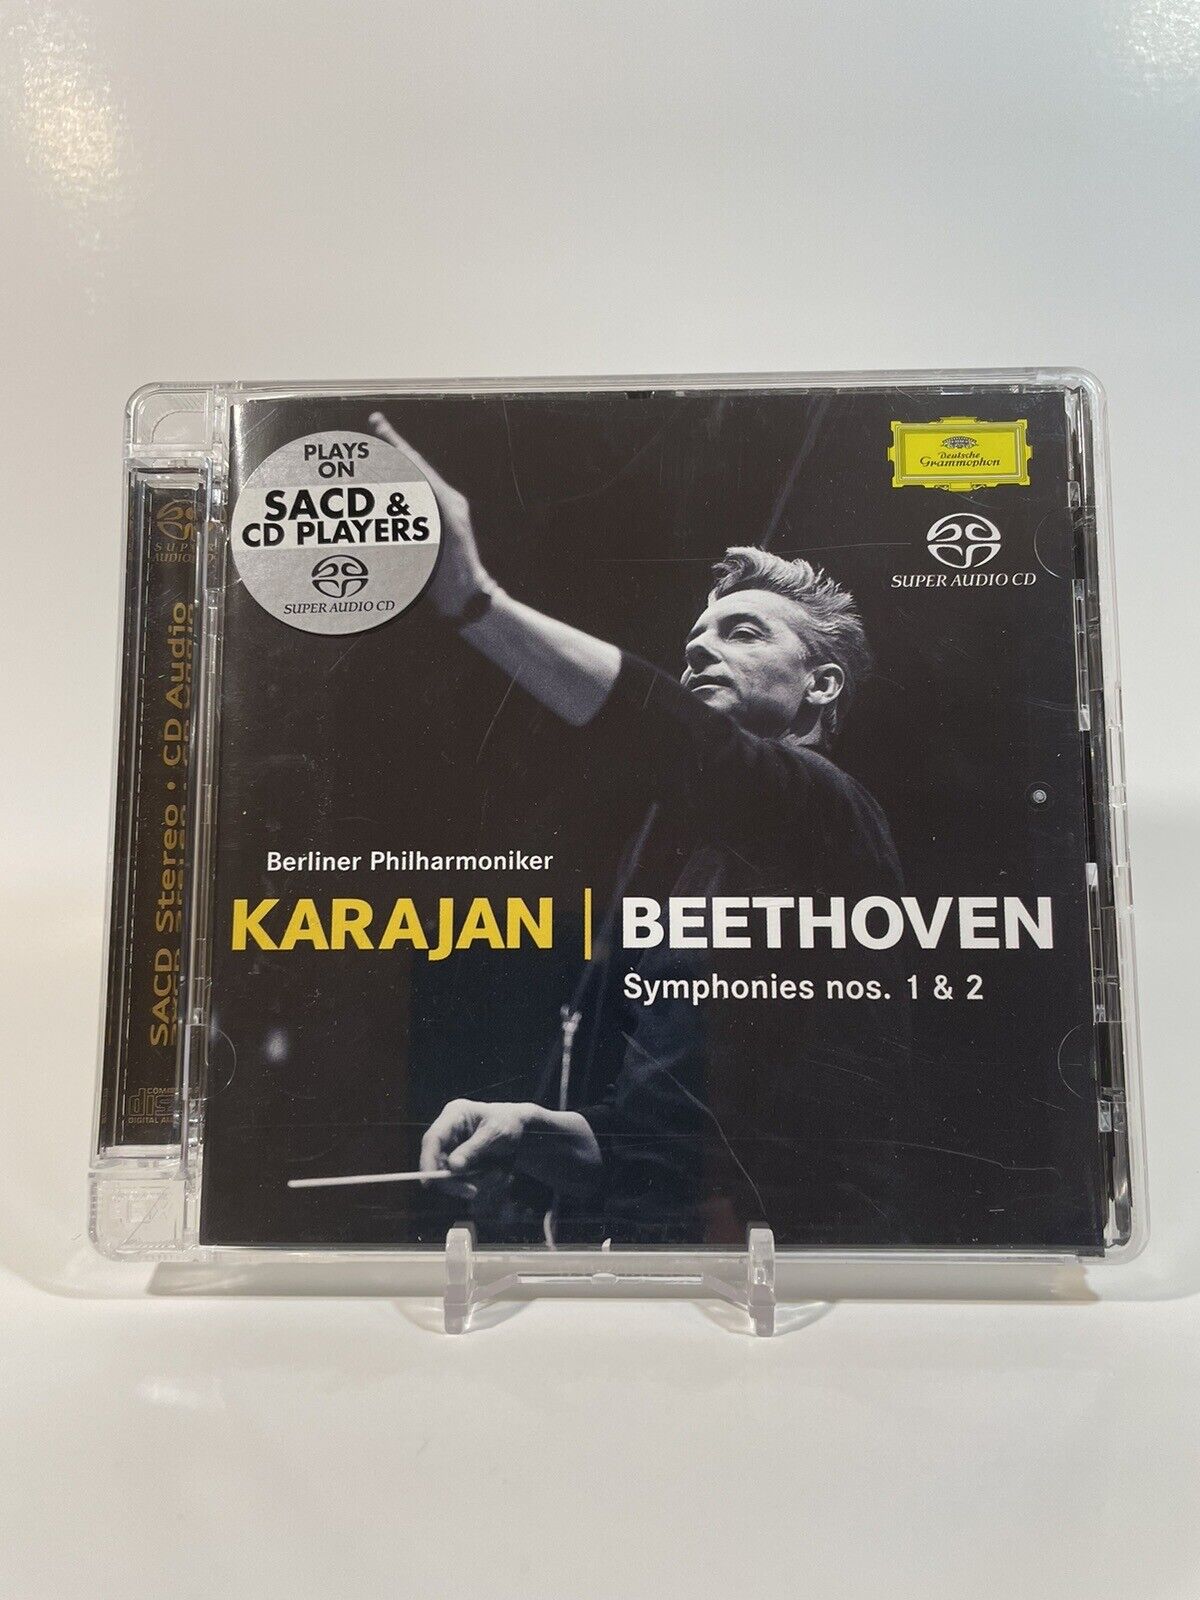 SACD: Beethoven Symphonies 1 & 2 Karajan Berlin - Super Audio CD Hybrid Stereo